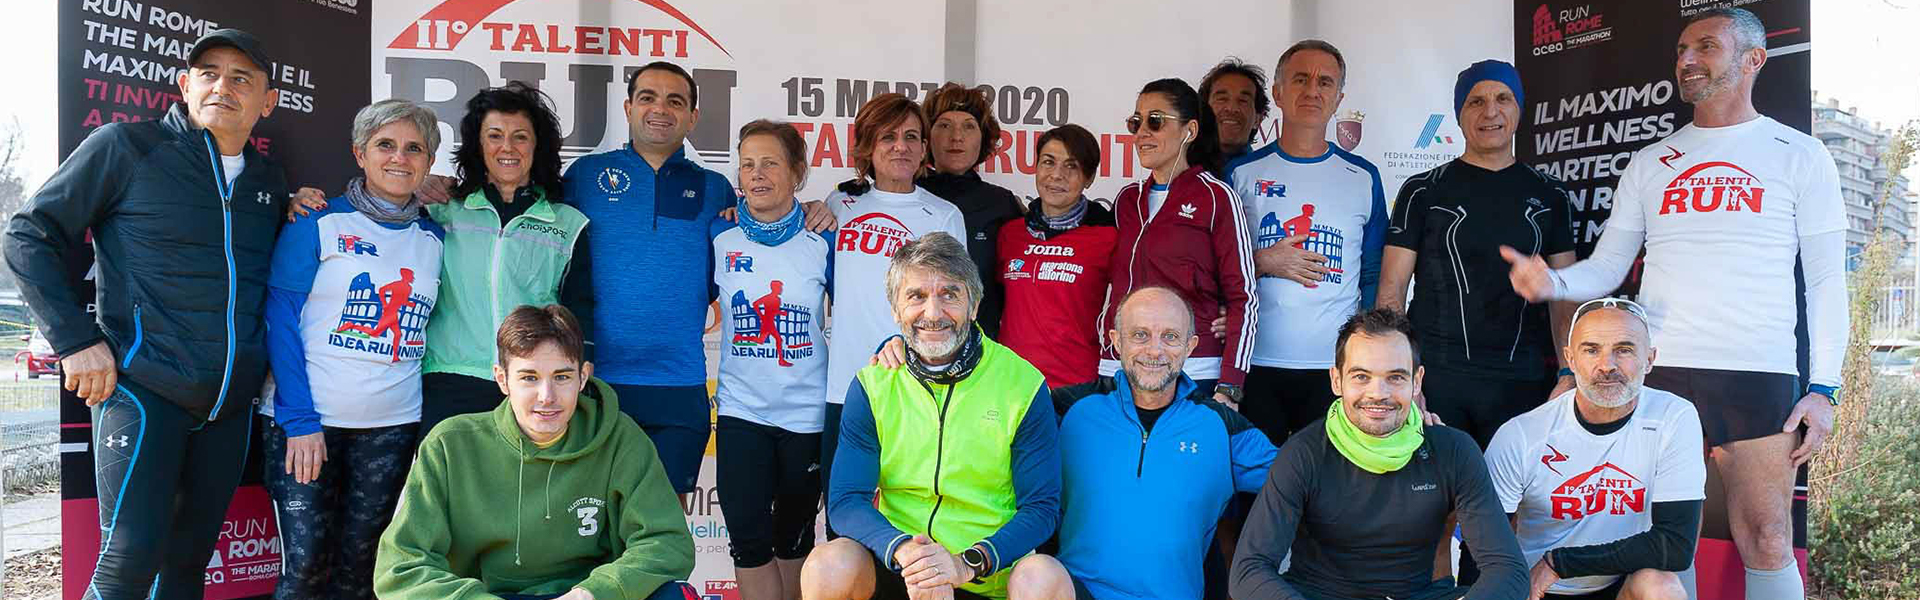 Sport, benessere e Acea Run Rome The Marathon nei circoli di Roma